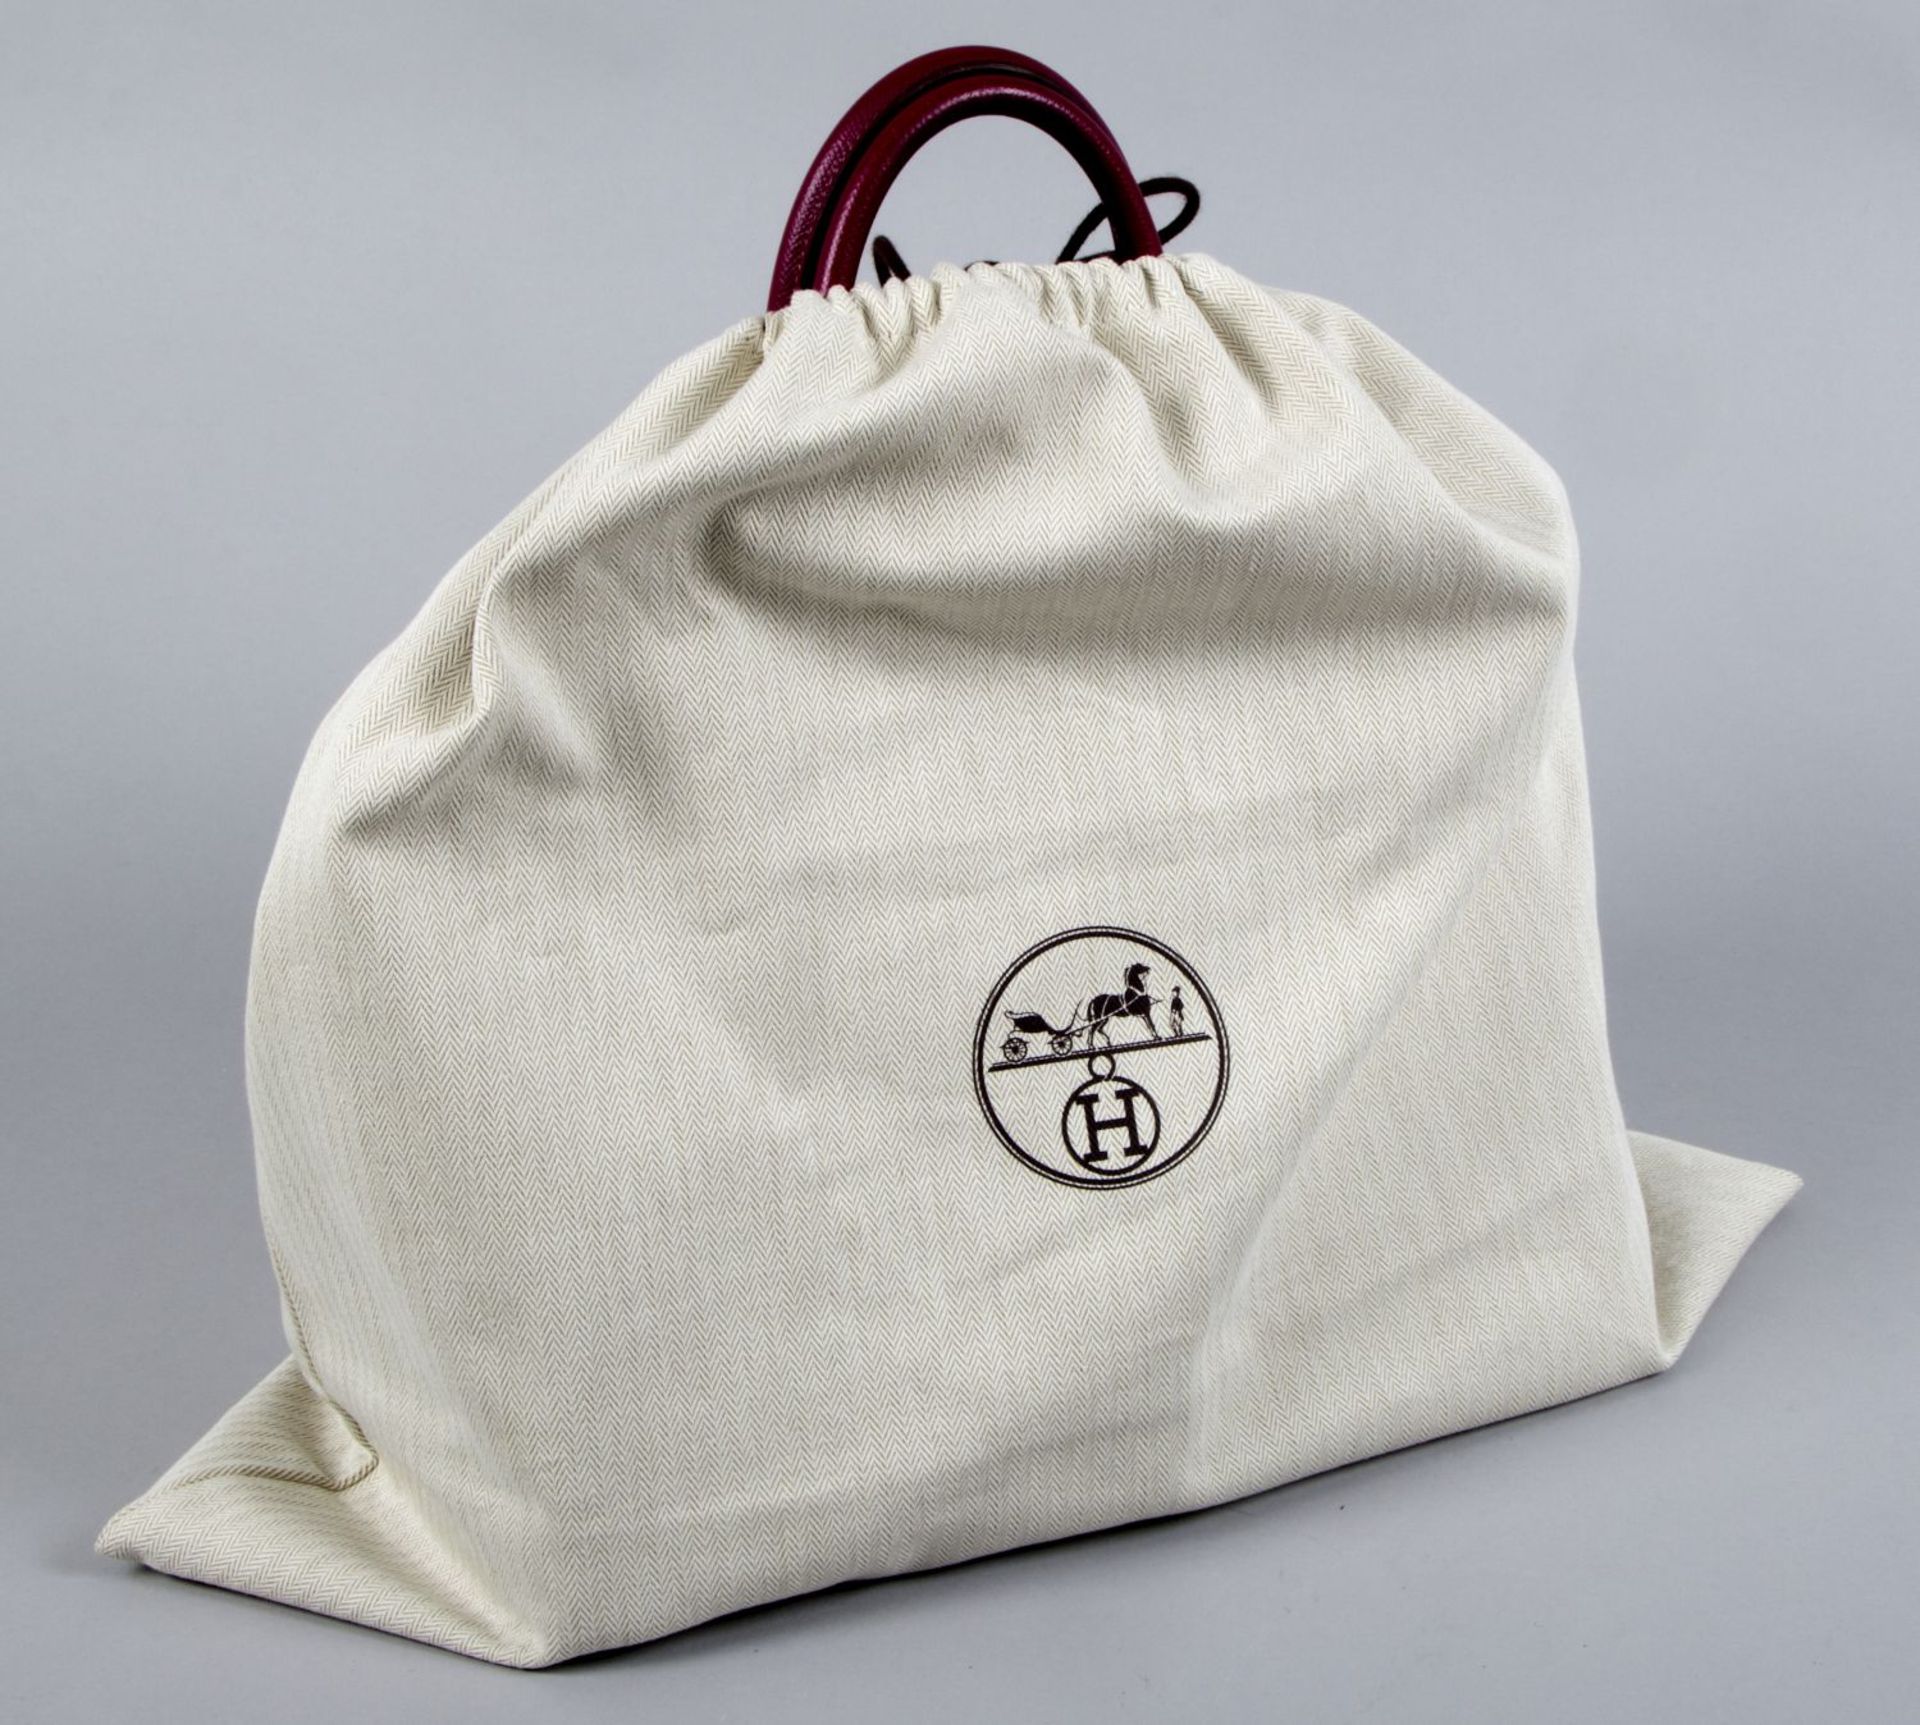 Hermès ''Birkin Bag 35'' Kalbsleder in Fuchsia mit weißer Naht. Beschläge mit Palladiumauflage. Trap - Bild 10 aus 10